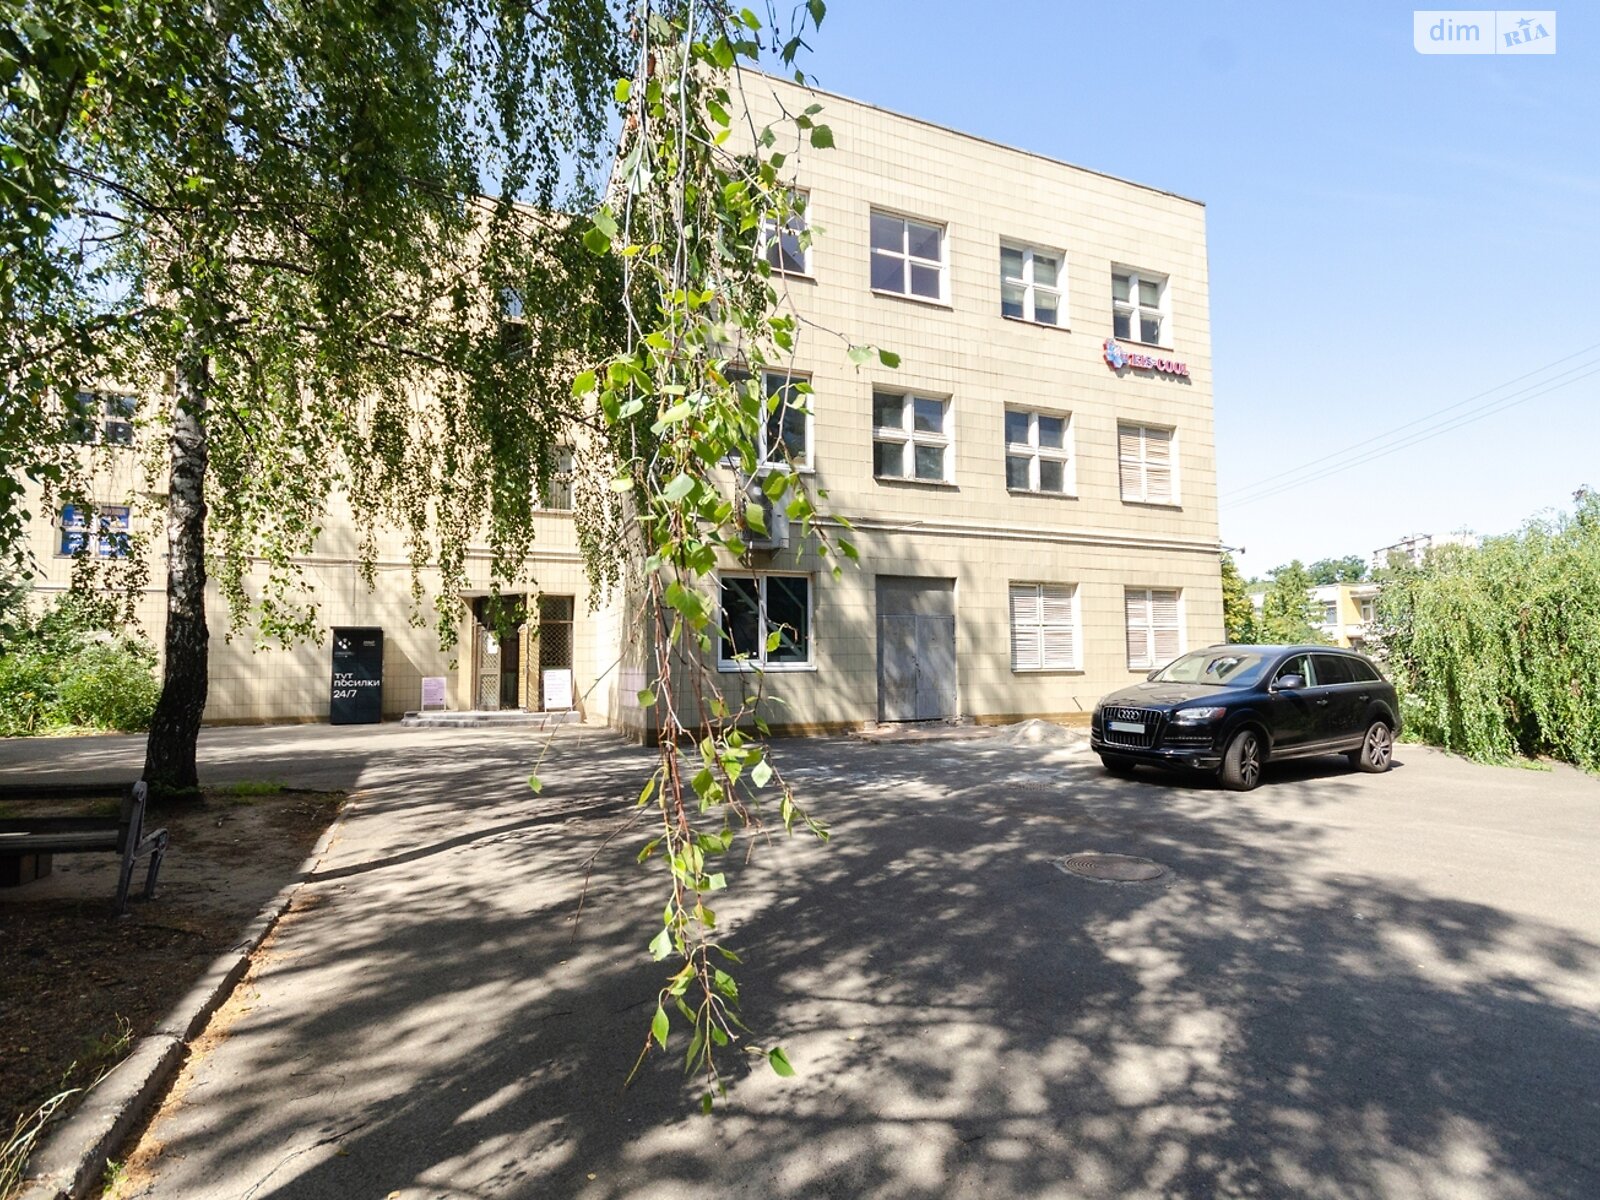 Аренда офисного помещения в Киеве, Лятошинского улица 4Б, помещений - 1, этаж - 3 фото 1